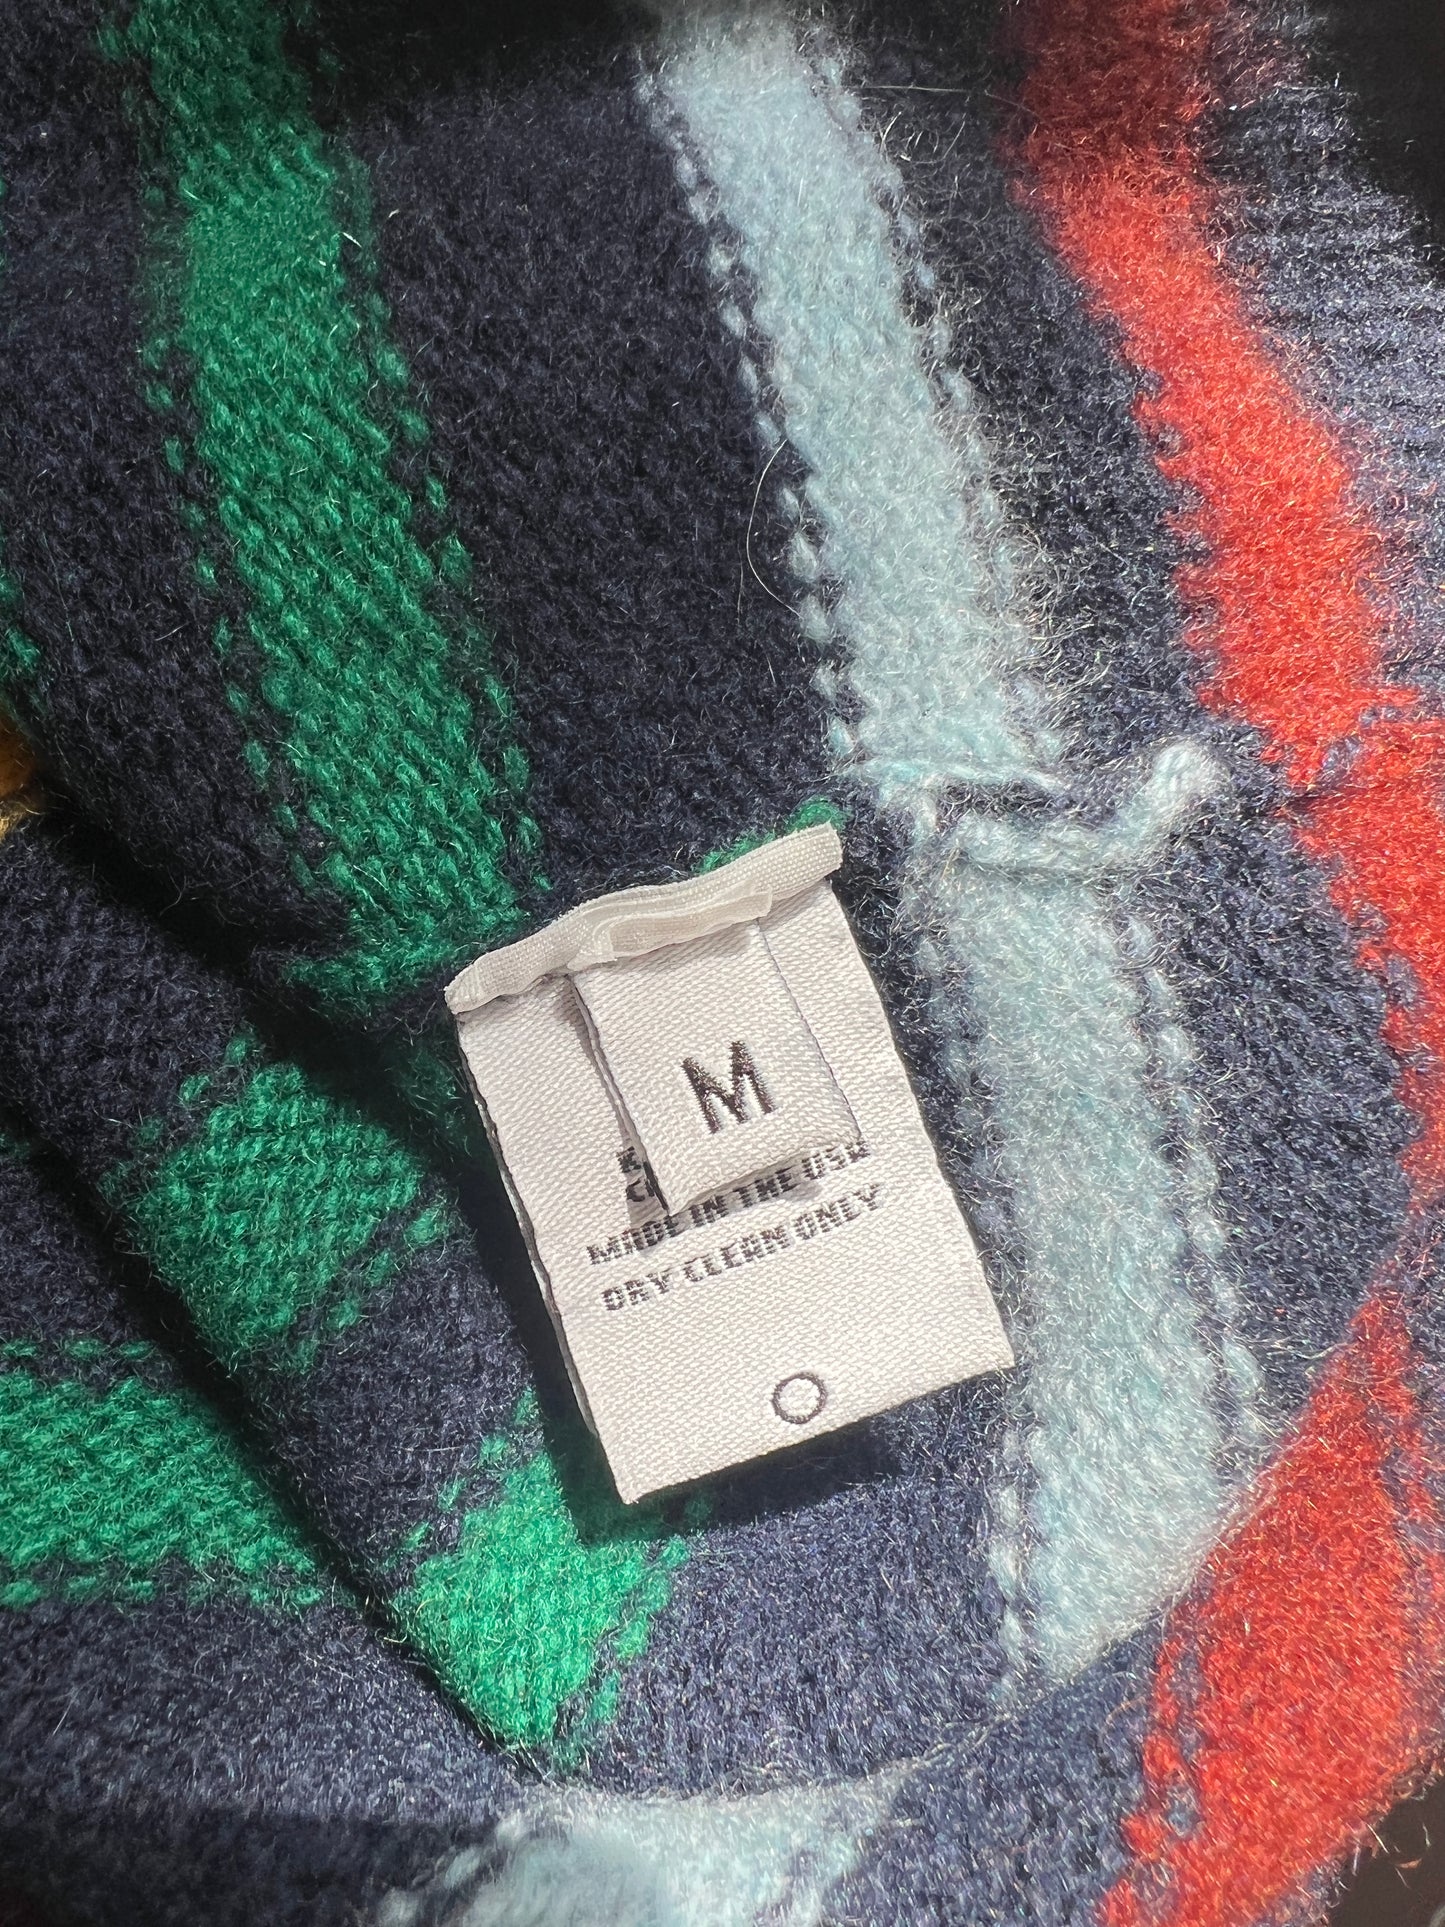 Multicolor Striped Cashmere Sweater - M